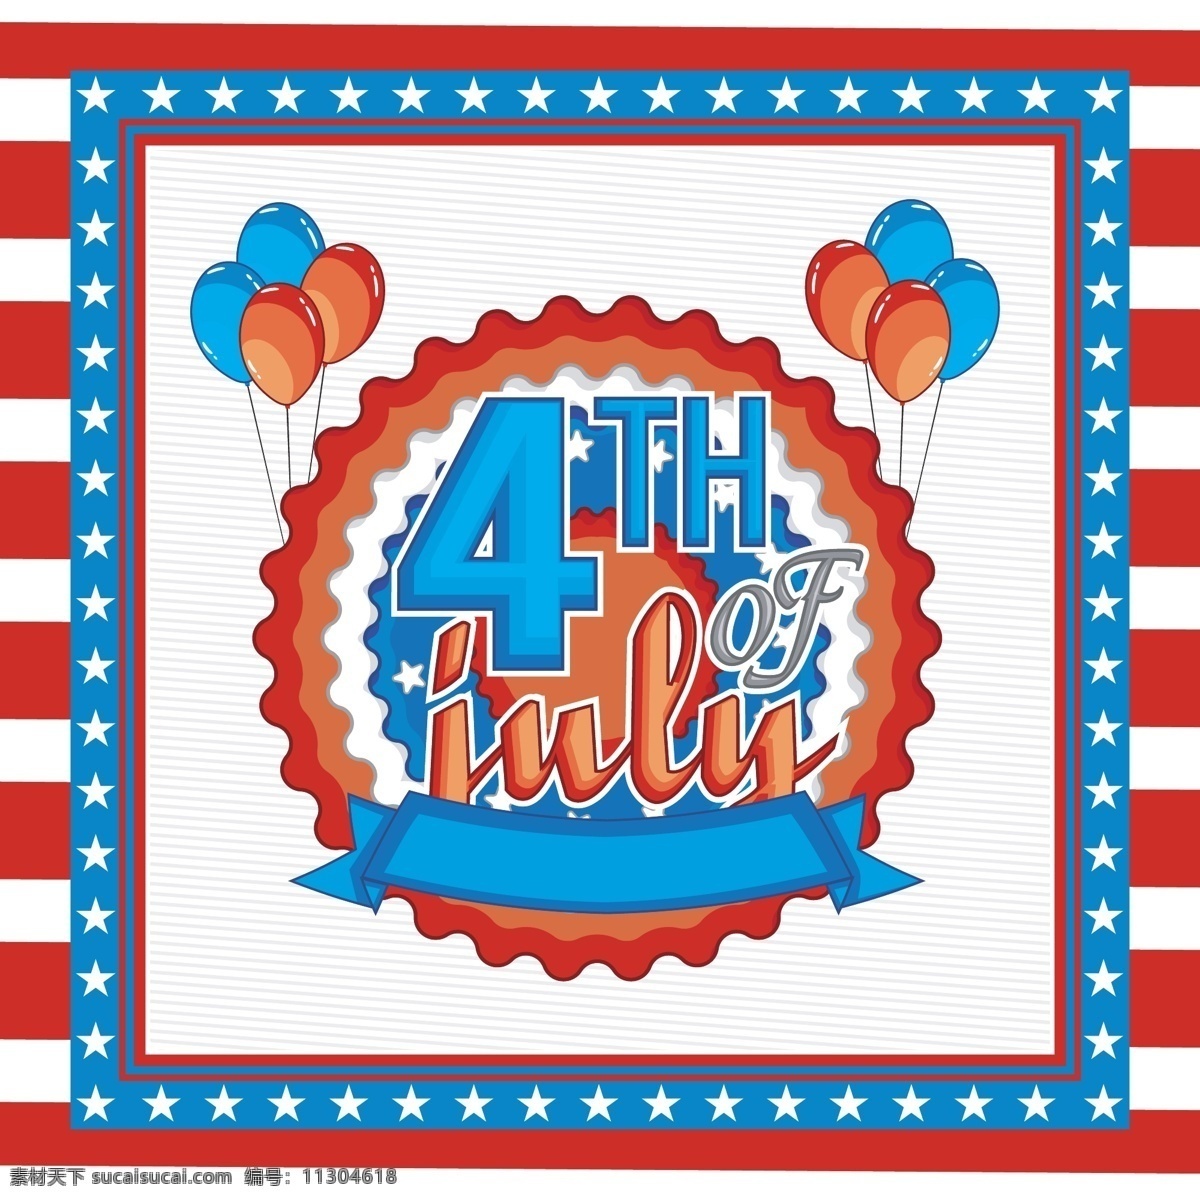 四 七月 背景 气球 壁纸 庆典 假日 庆祝 美国 传统 自由 选举 独立日 日 爱国 英国 独立 平等